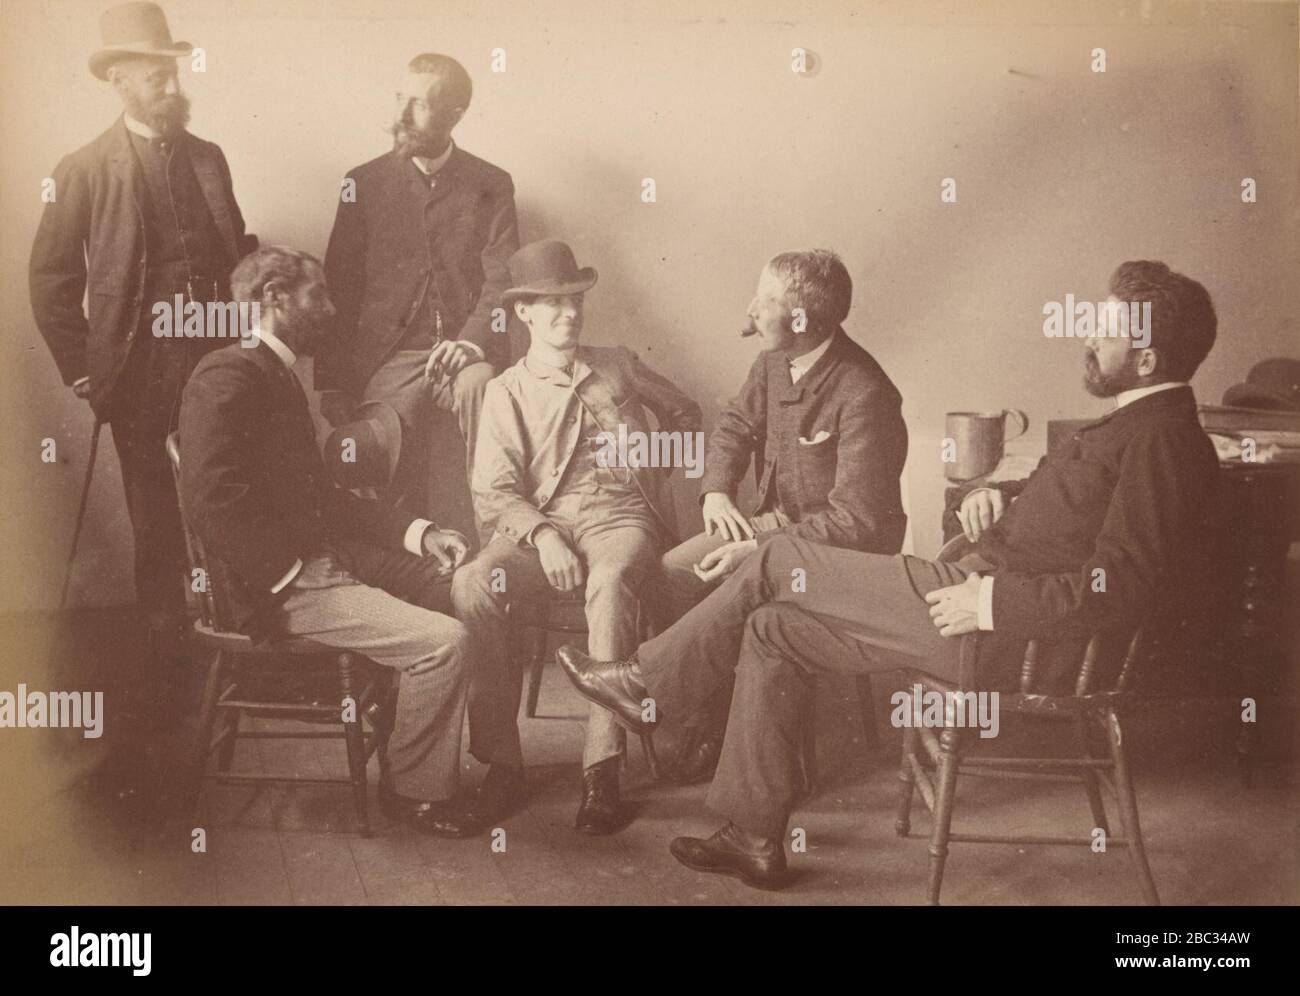 Portrait de groupe de Fred. B. Schell, W. C. Fitler, Hop L. Hopkins, Phil May, Julian Ashton et W. T. Smedley. Banque D'Images